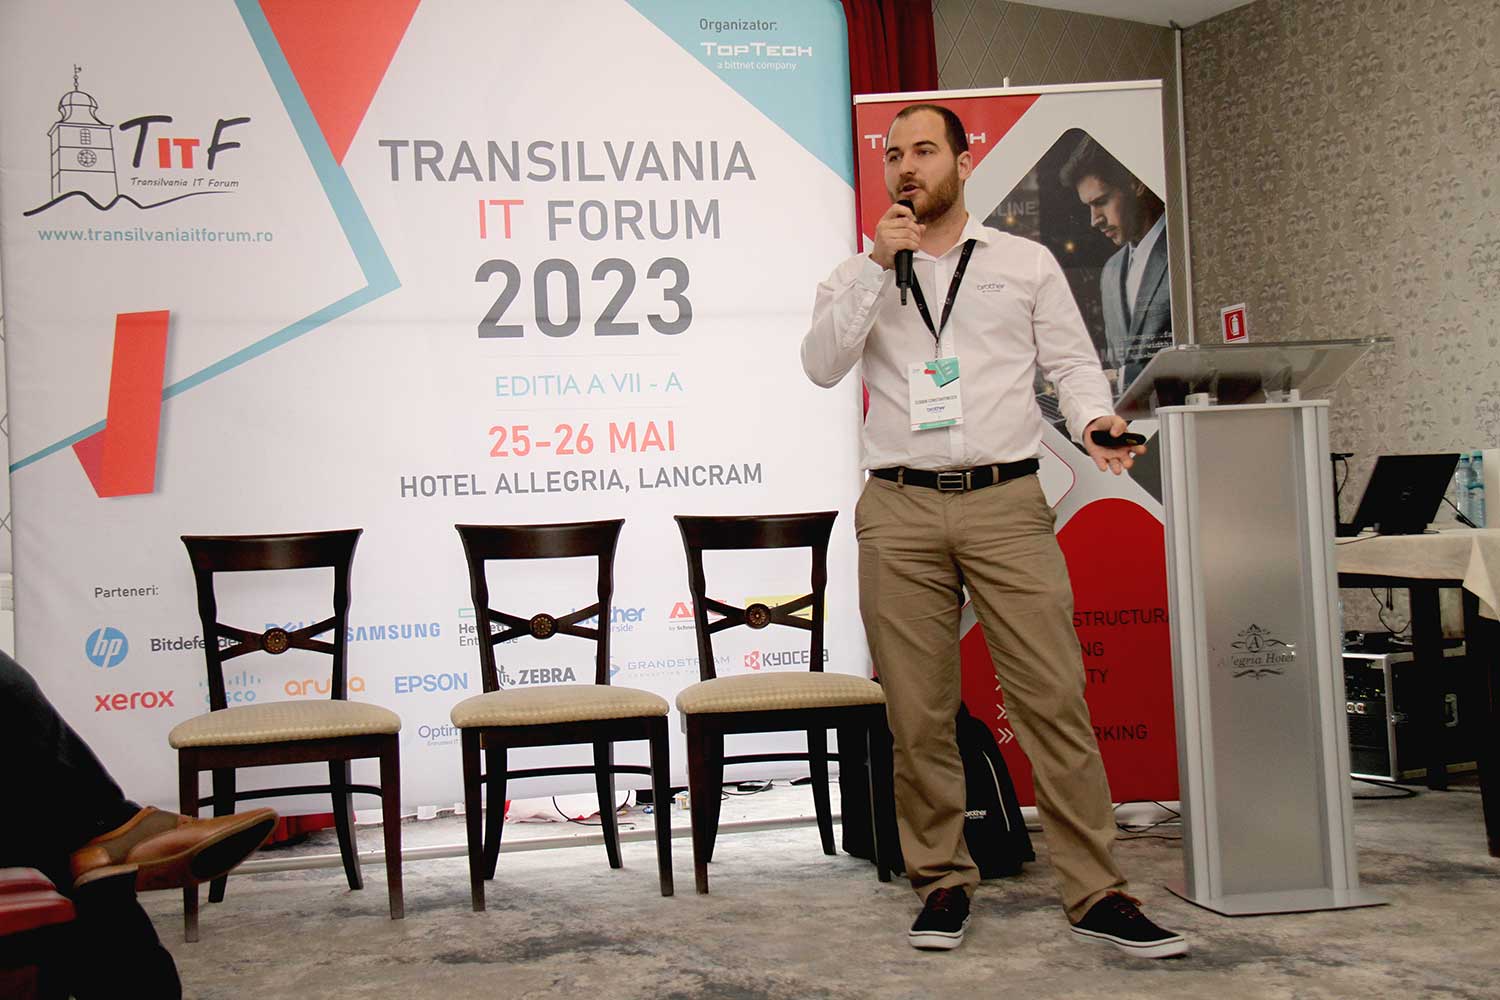 Transilvania IT Forum 2023